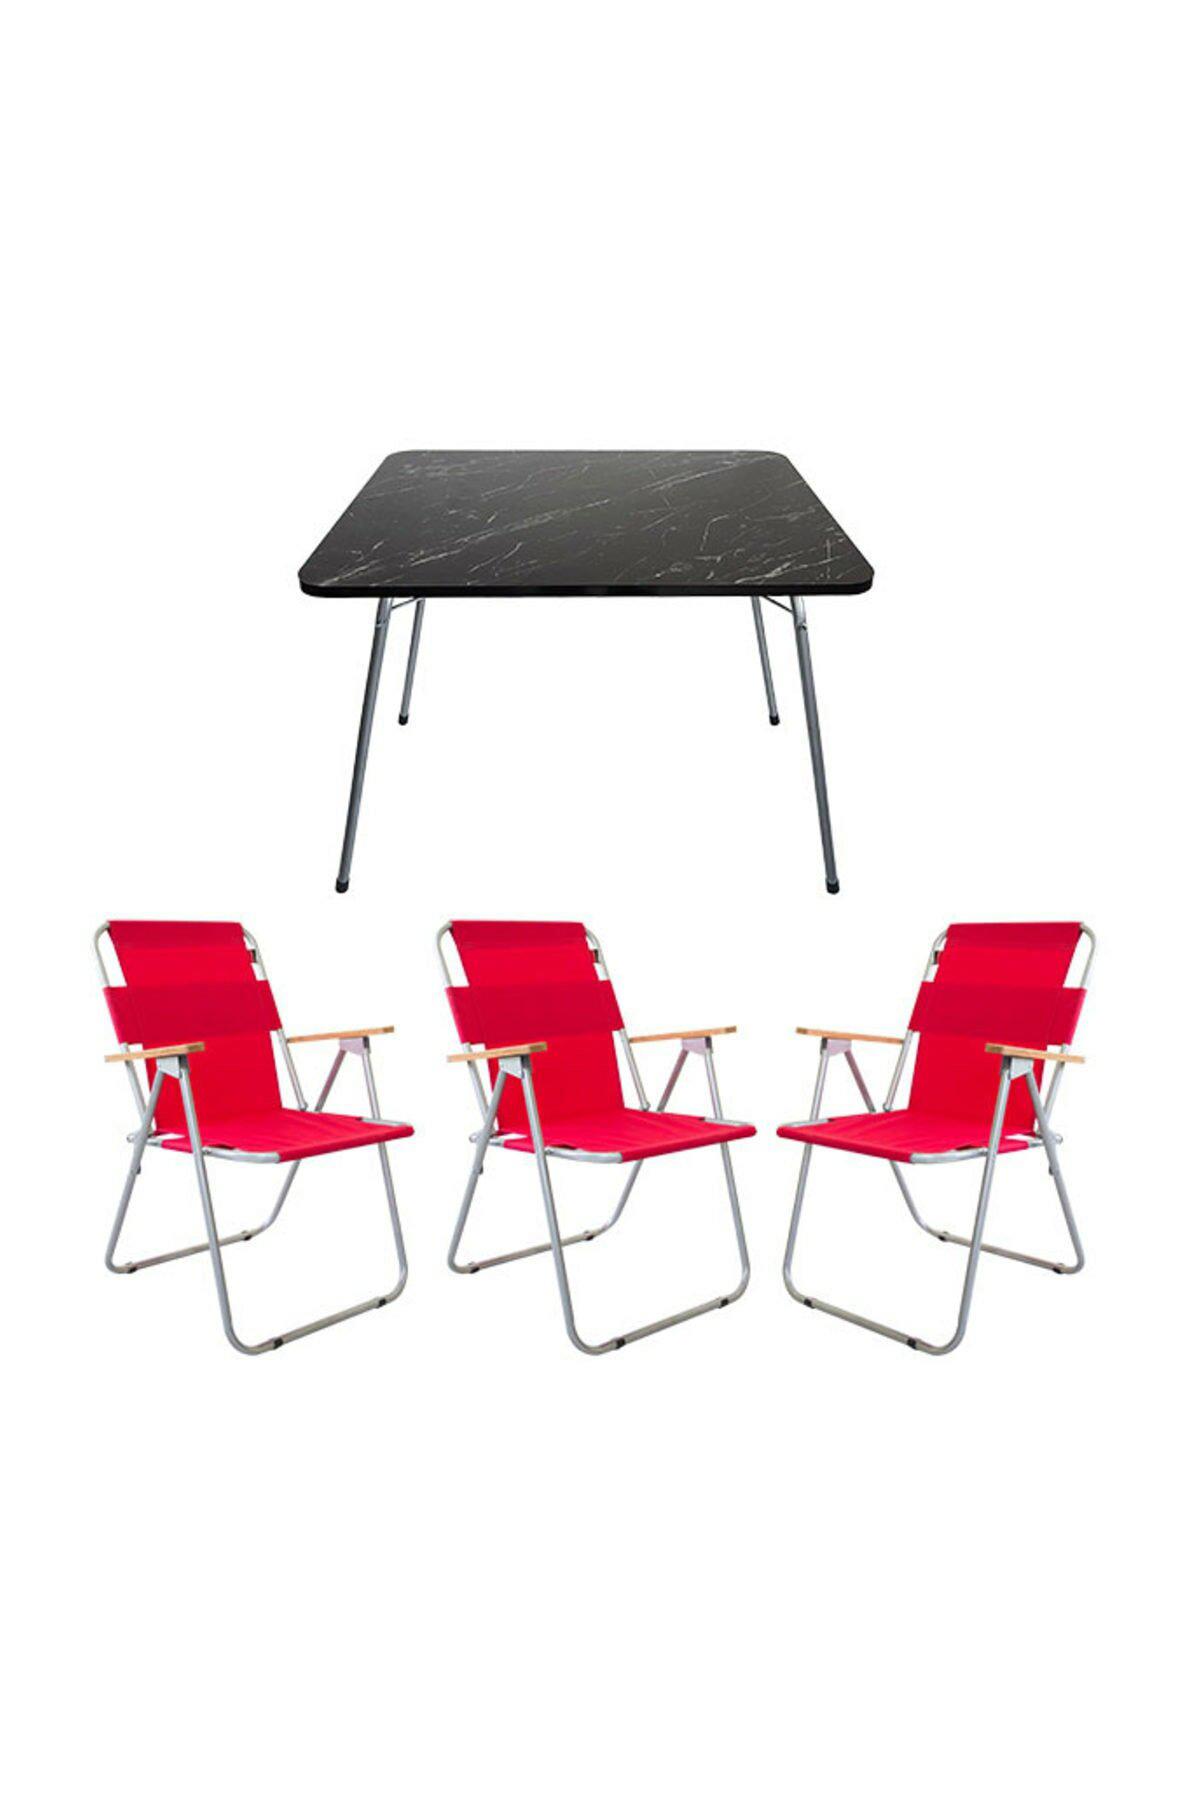 Bofigo 60 x 80 cm Tabureli Çantalı Dikdörtgen Granit Katlanır Kamp Masası Sİyah + 3 Adet Katlanır Sandalye Kırmızı